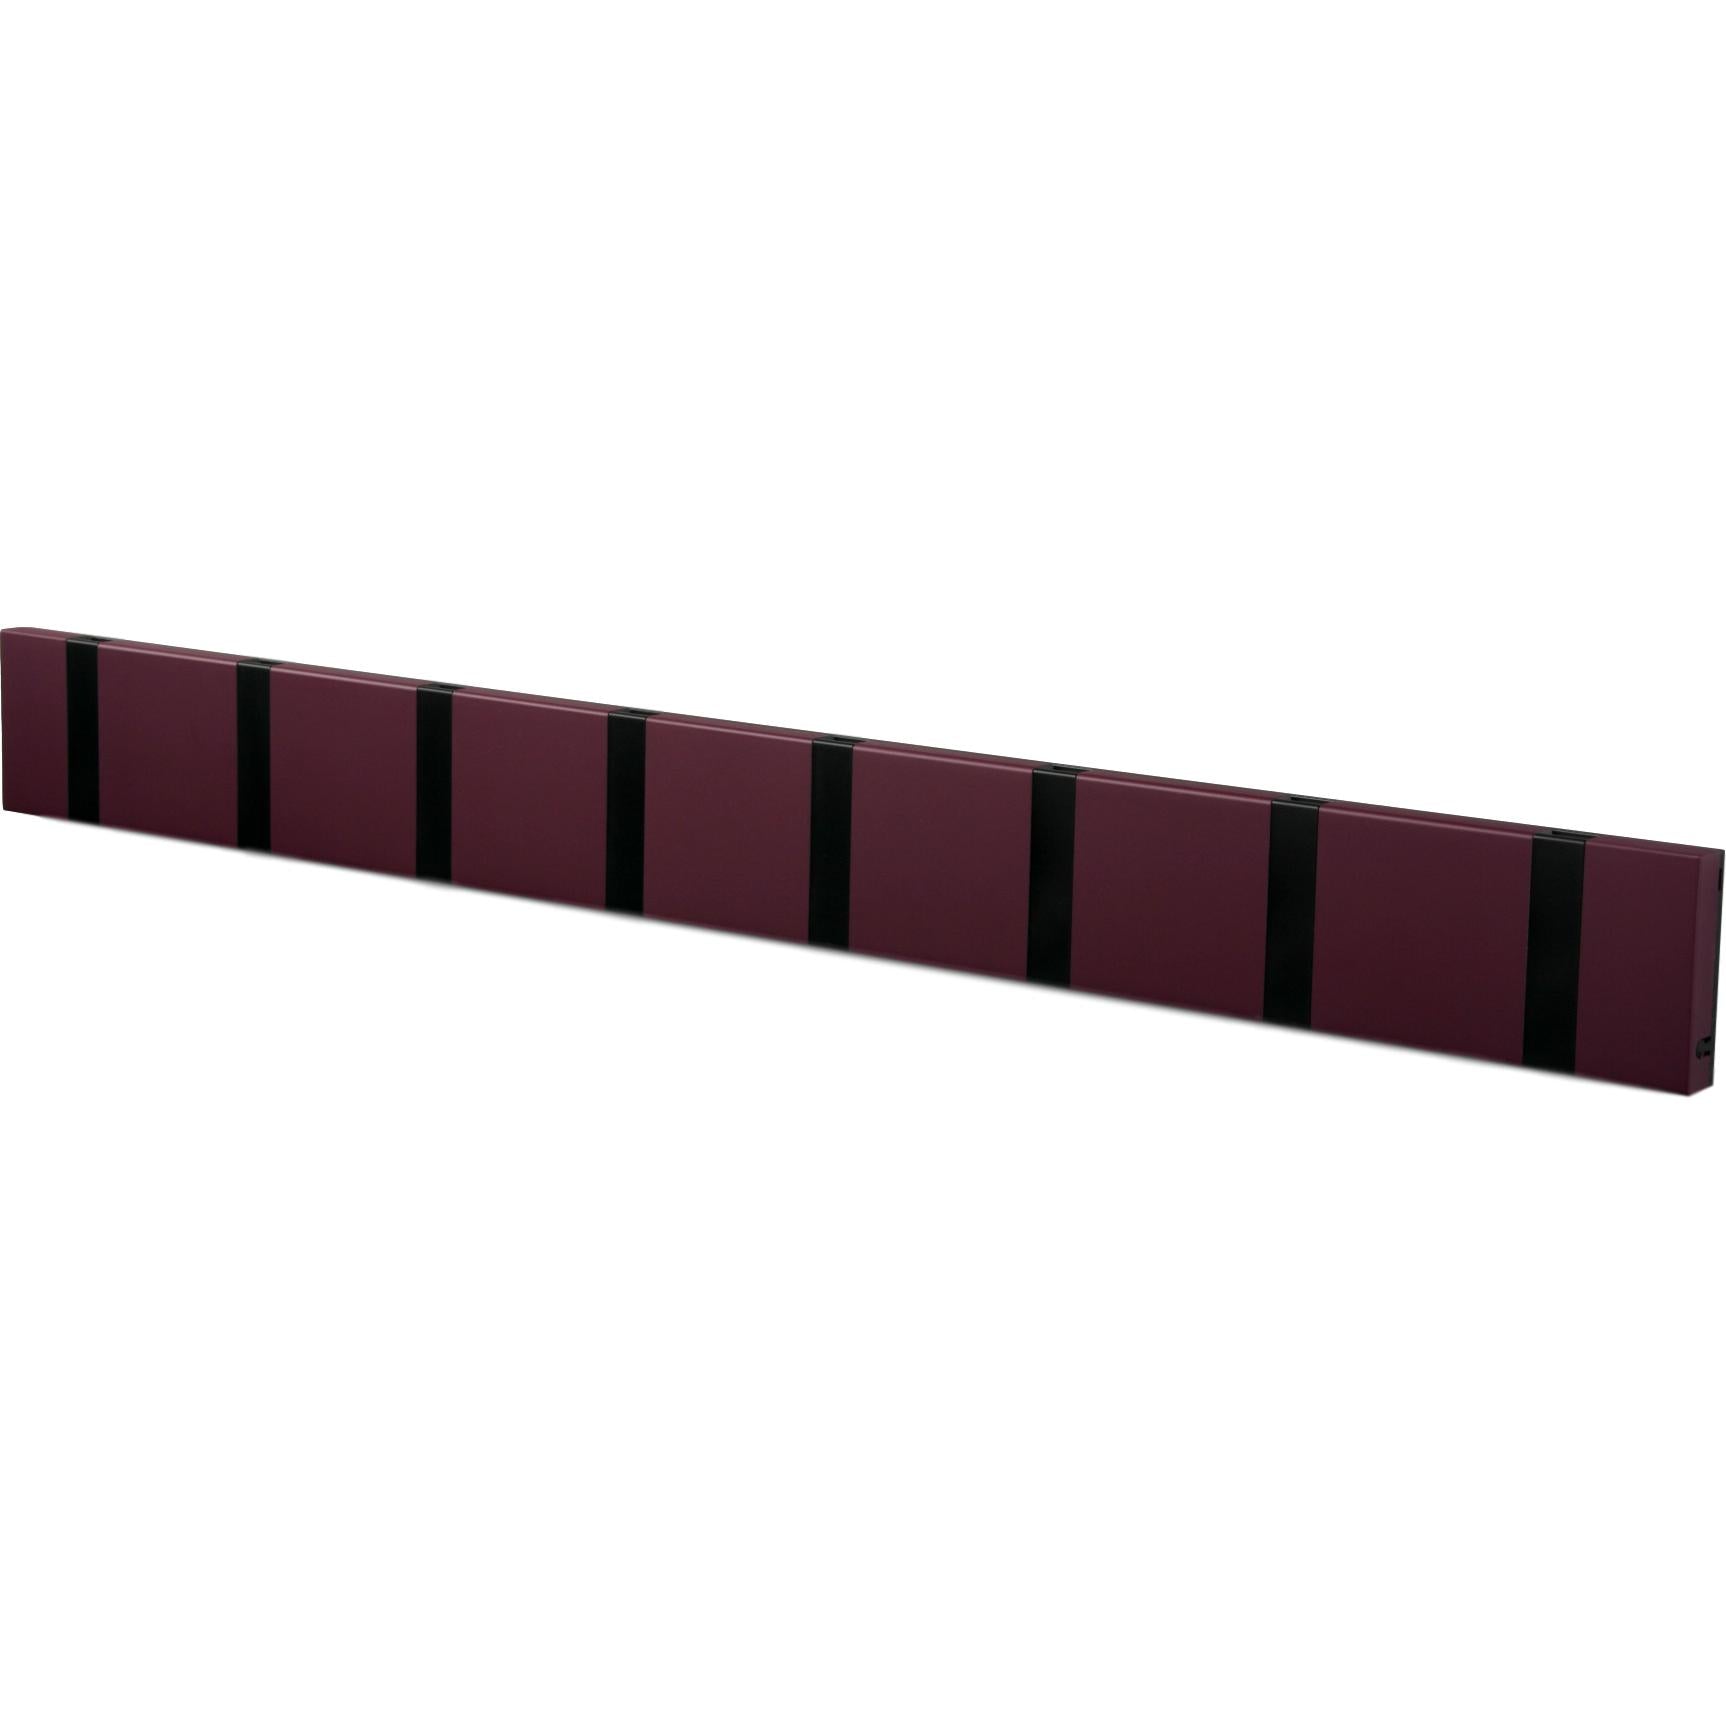 Loca Knax -vaakasuora takkiteline 8 koukkua, violetti/musta